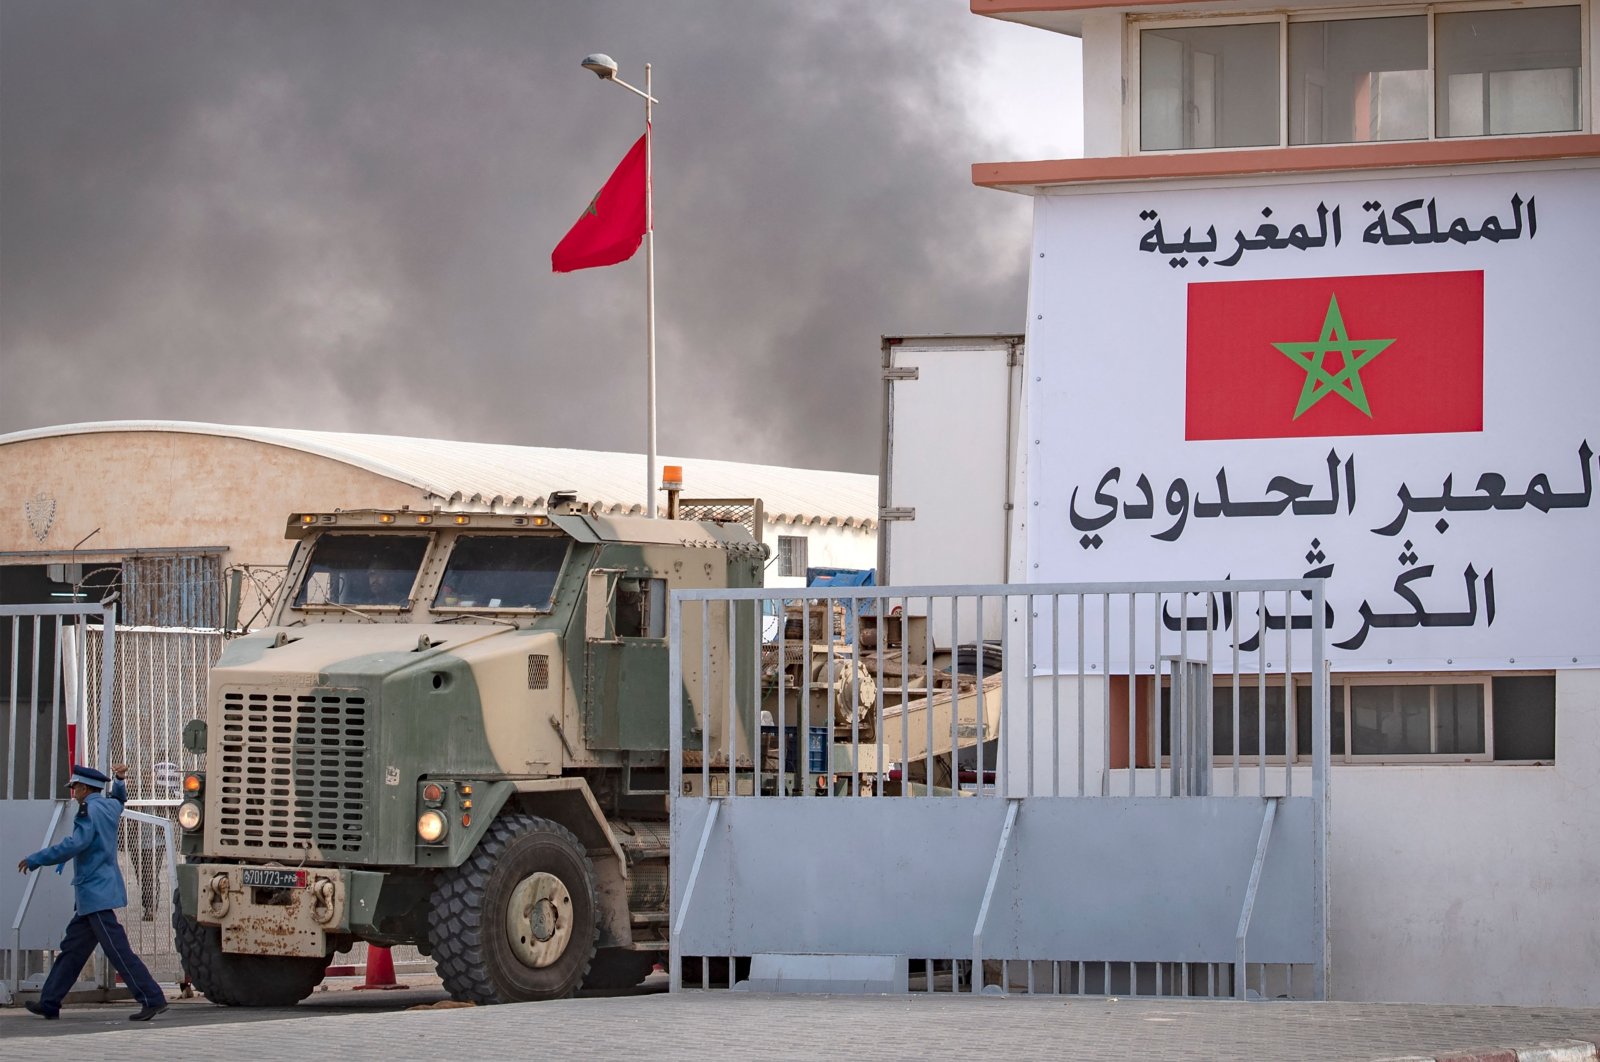 خبير أزمات لمدار21: التصعيد الجزائري قد يفتح مناوشات حدودية مع المغرب